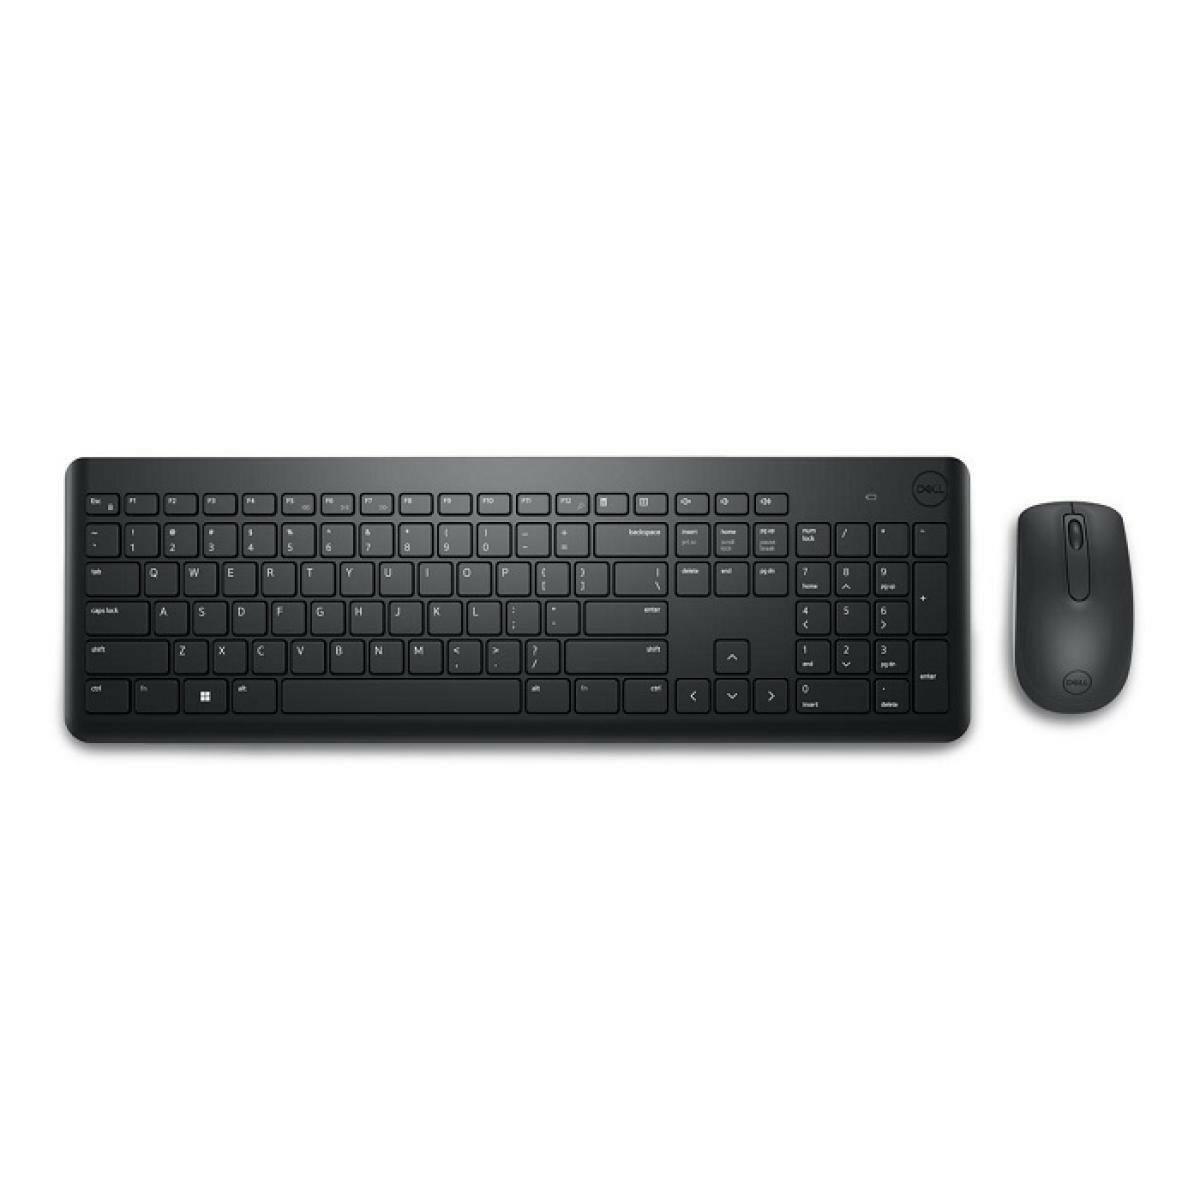 DELL OFFICE KEYBOARD Dell KM3322W Wireless Keyboard & Mouse Combo w/Function & Dedicated Keys